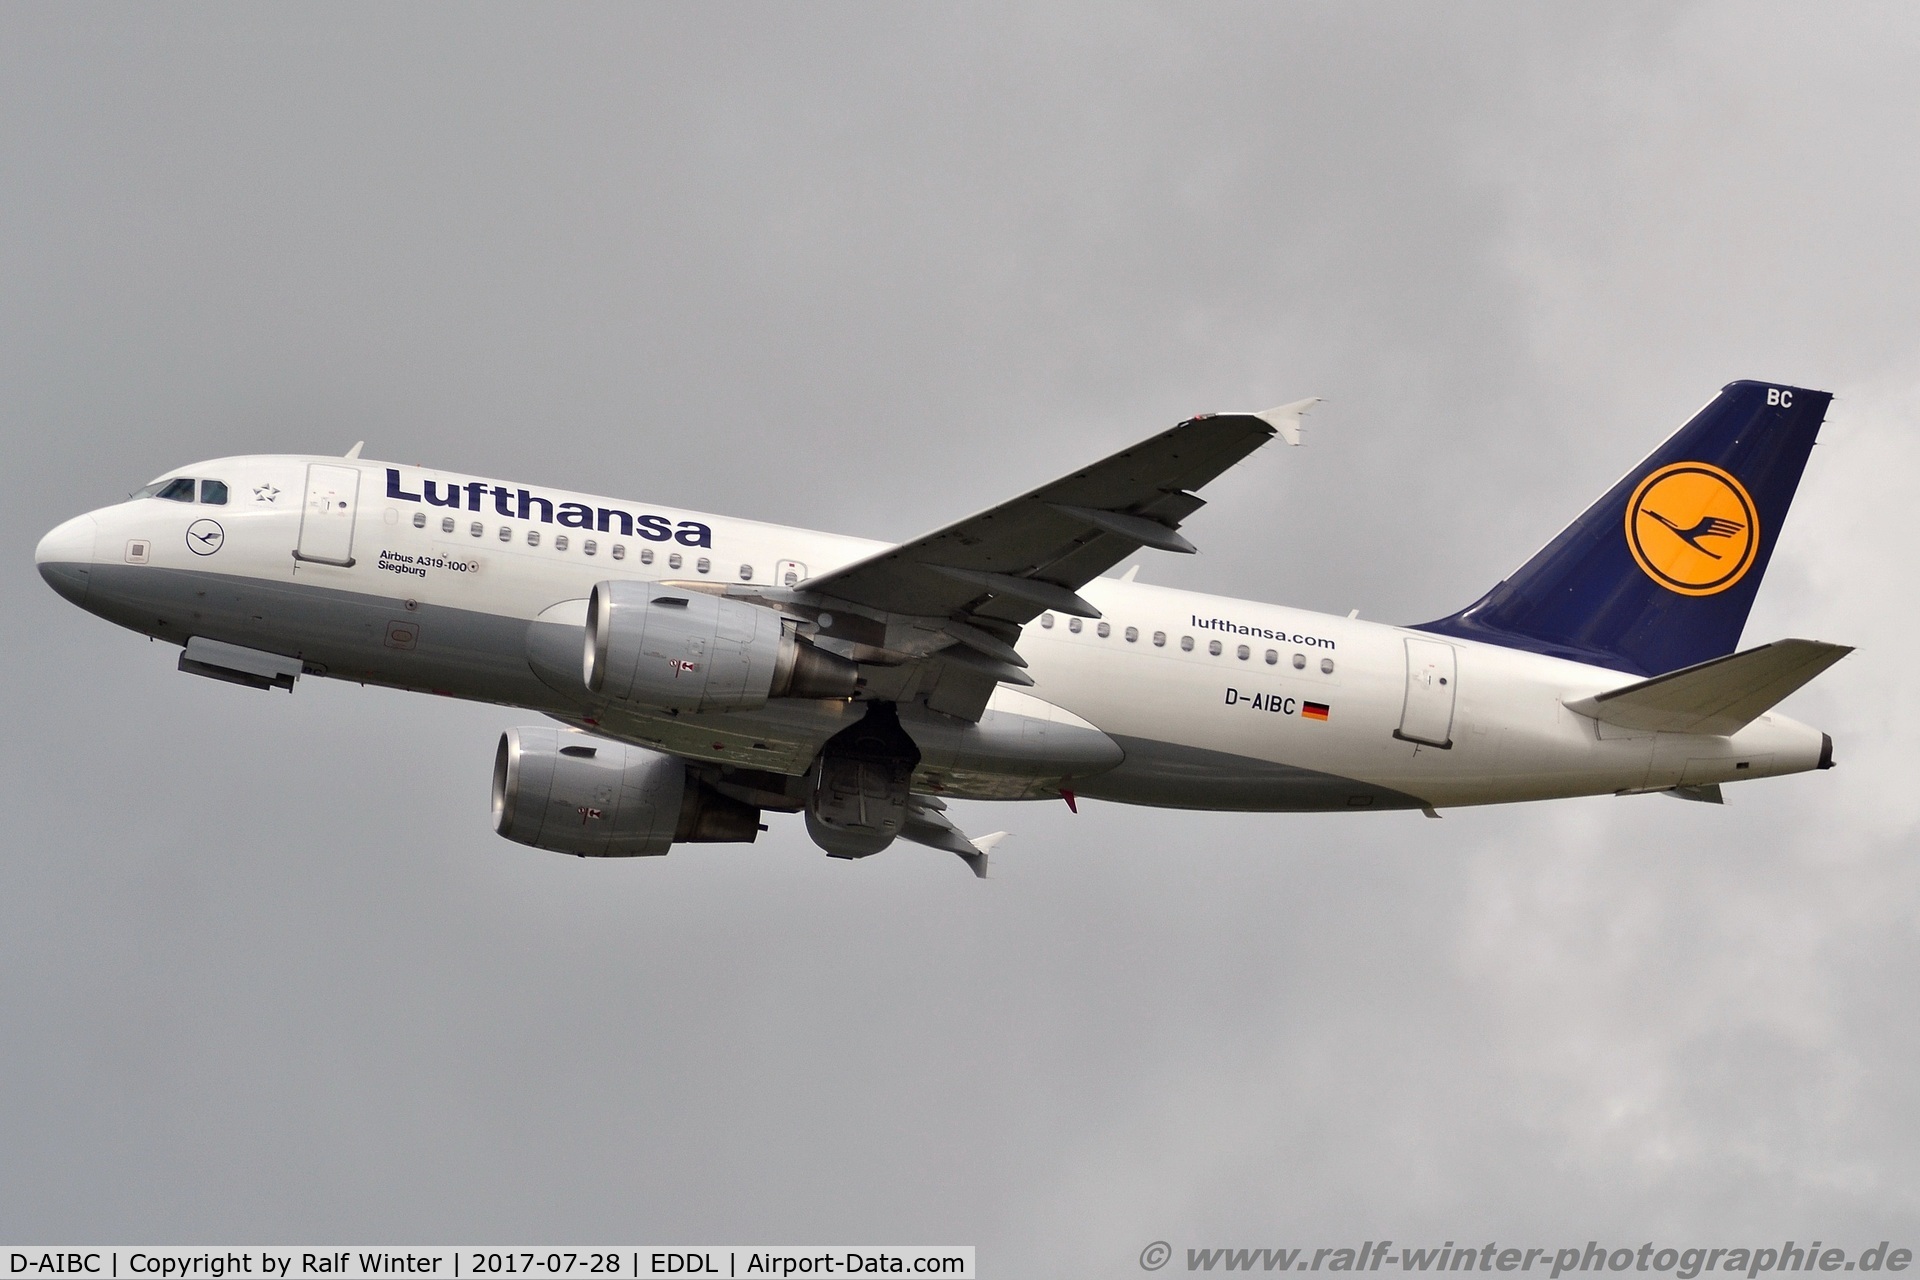 D-AIBC, 2010 Airbus A319-112 C/N 4332, Airbus A319-112 - LH DLH Lufthansa 'Siegburg' - 4332 - D-AIBC - 28.07.2017 - DUS